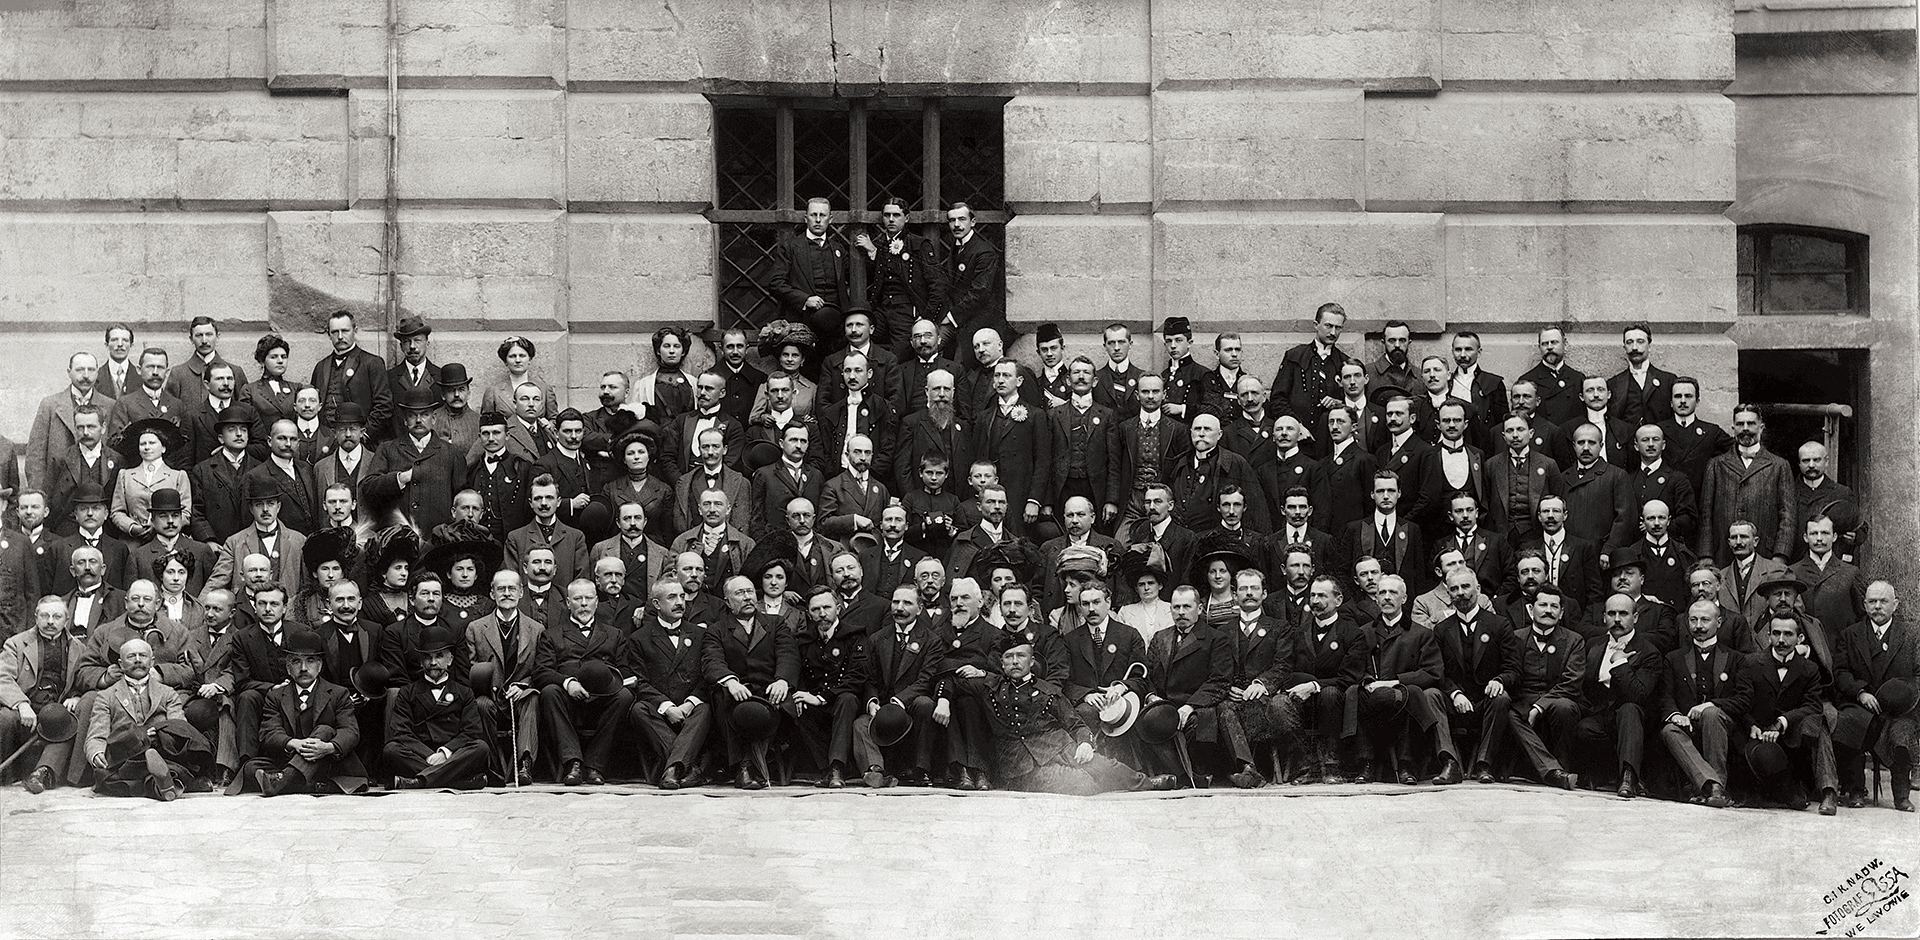 Archiwalne zdjęcie przedstawia bardzo liczną grupę ludzi siedzących oraz stojących w kilku rzędach przed ścianą budynku. Osoby pozują do zdjęcia. W przeważającej mierze grupę stanowią mężczyżni. Dostrzec można kilka kobiet.